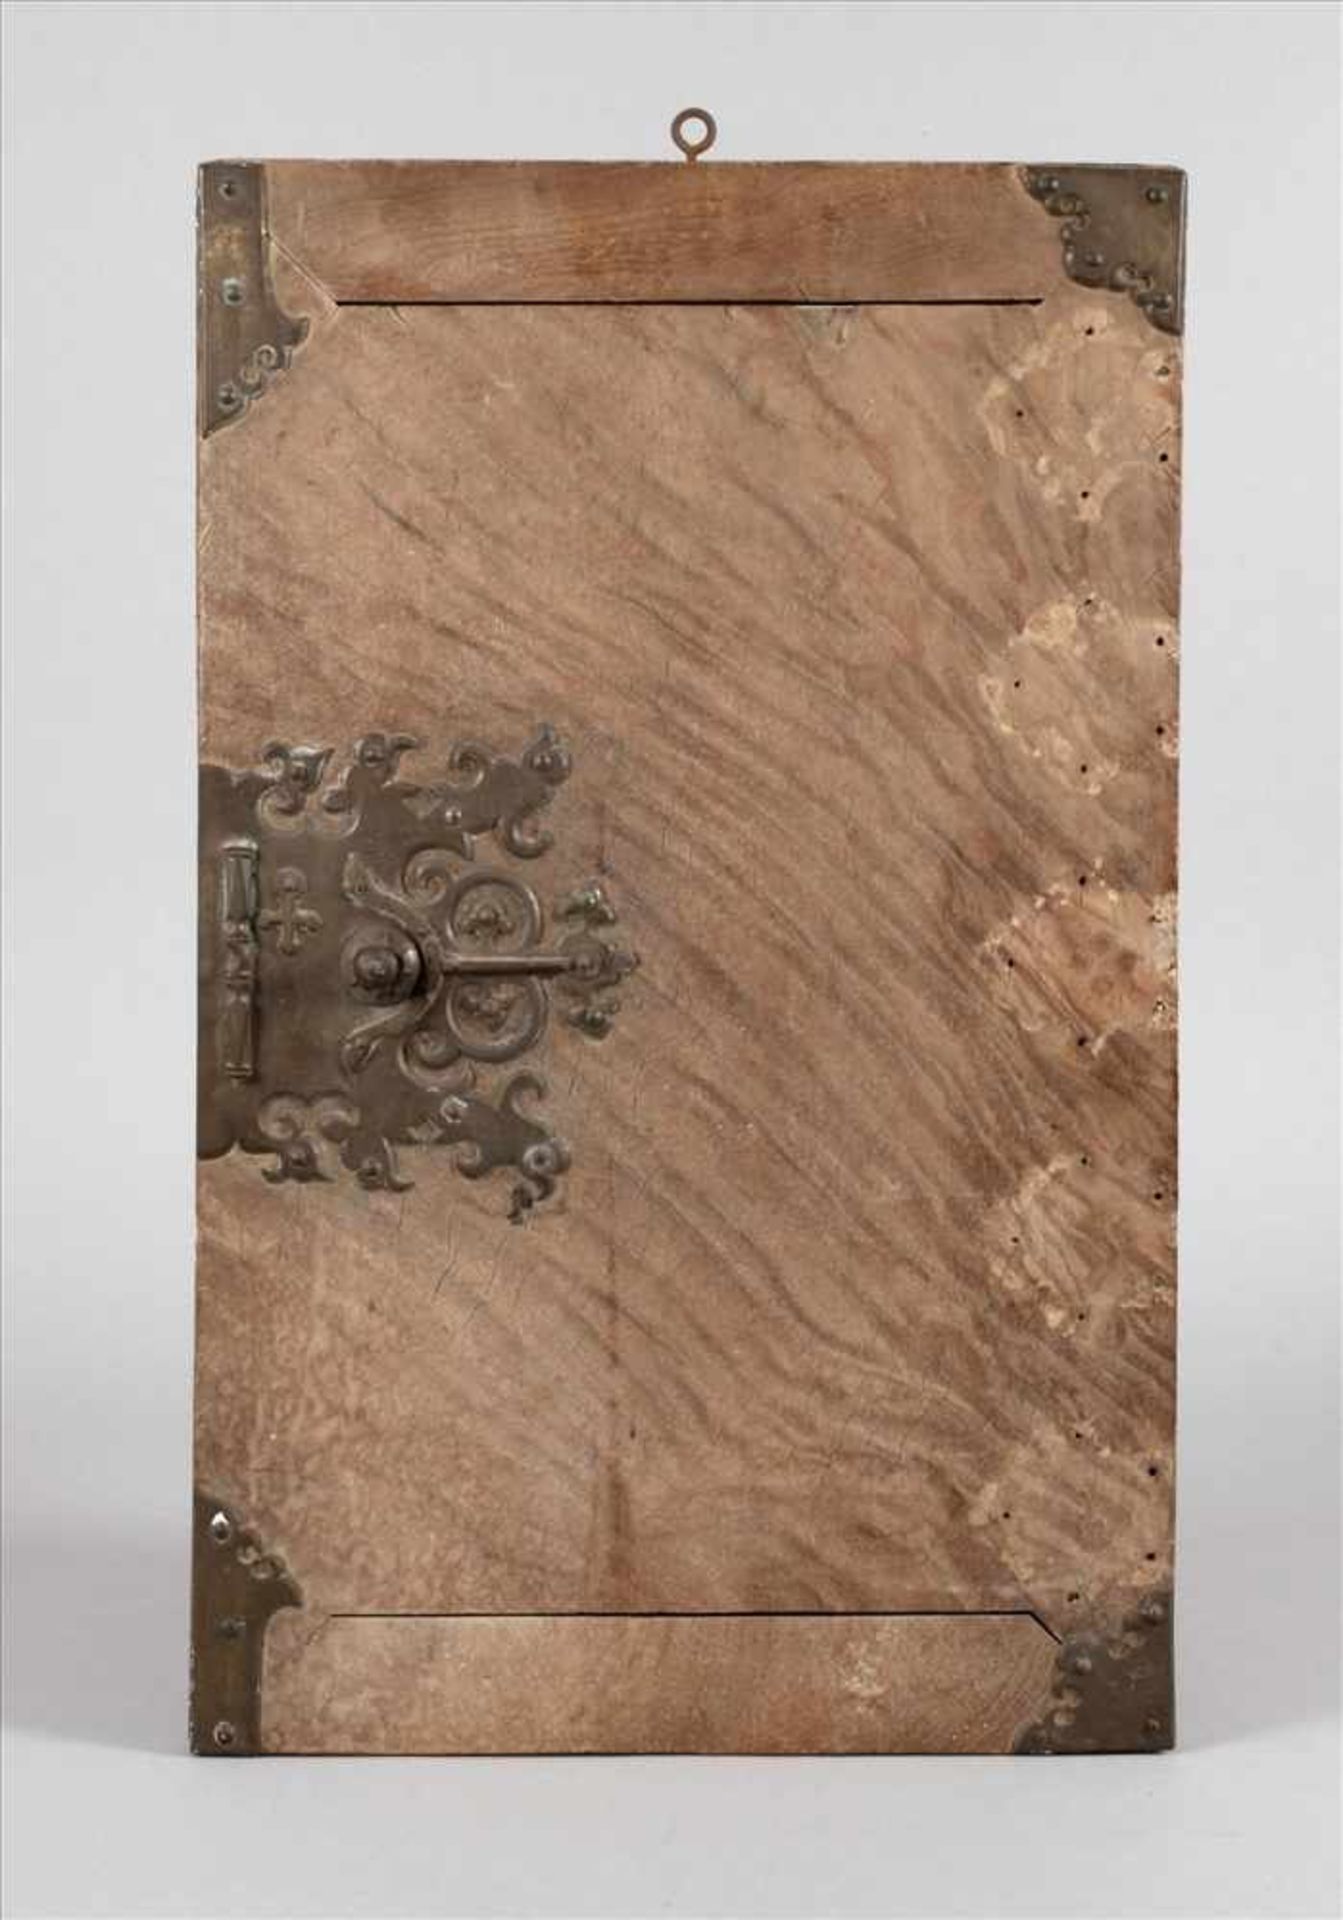 Kabinetttürwohl 17. Jh., Platte aus massivem Riegelahorn, reich verzierte, fein ausgearbeitete